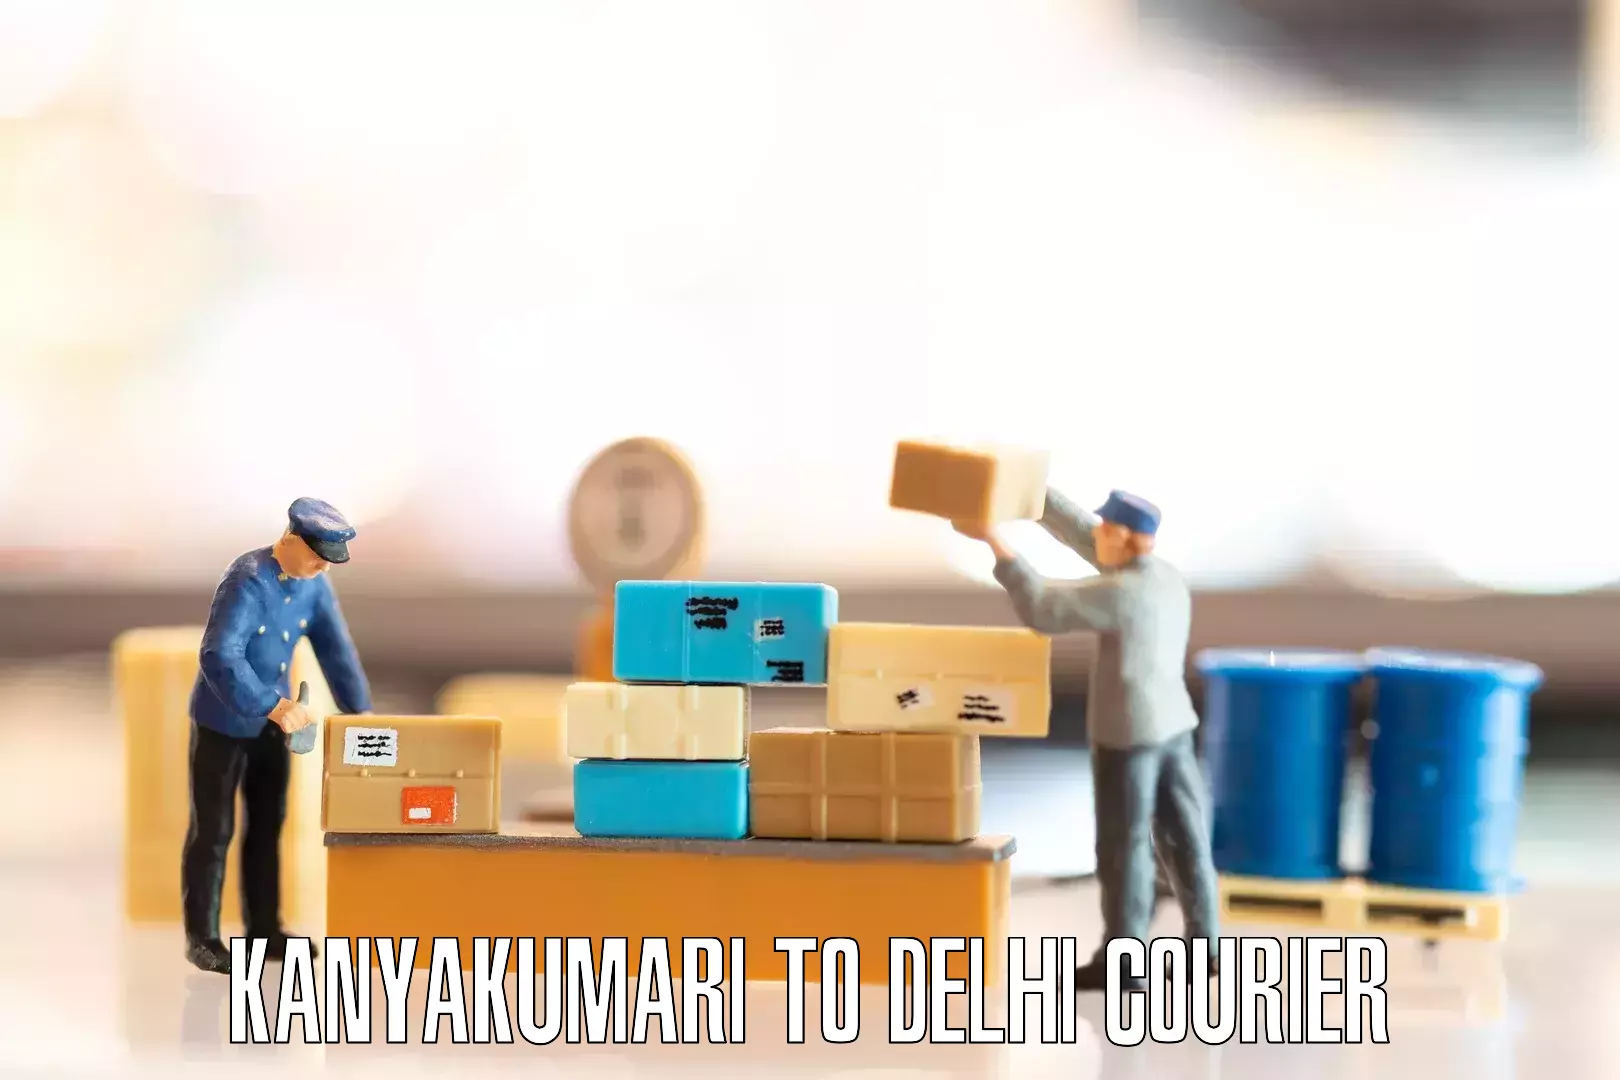 Moving and packing experts Kanyakumari to Naraina Industrial Estate